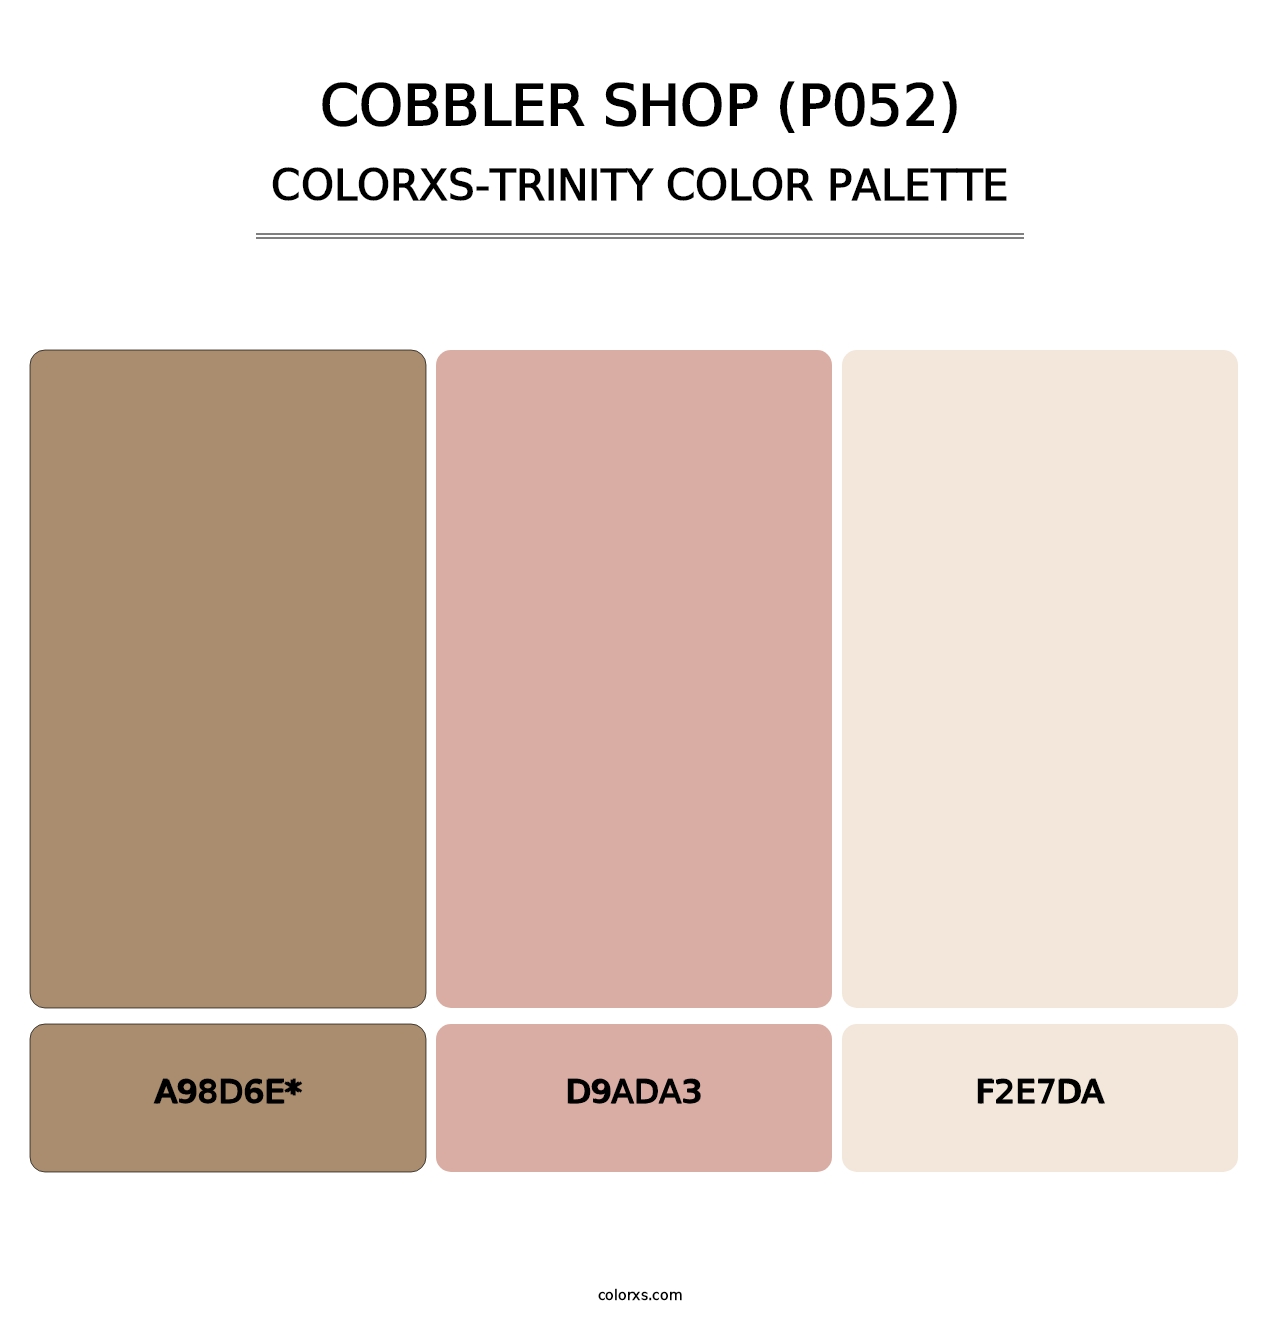 Cobbler Shop (P052) - Colorxs Trinity Palette